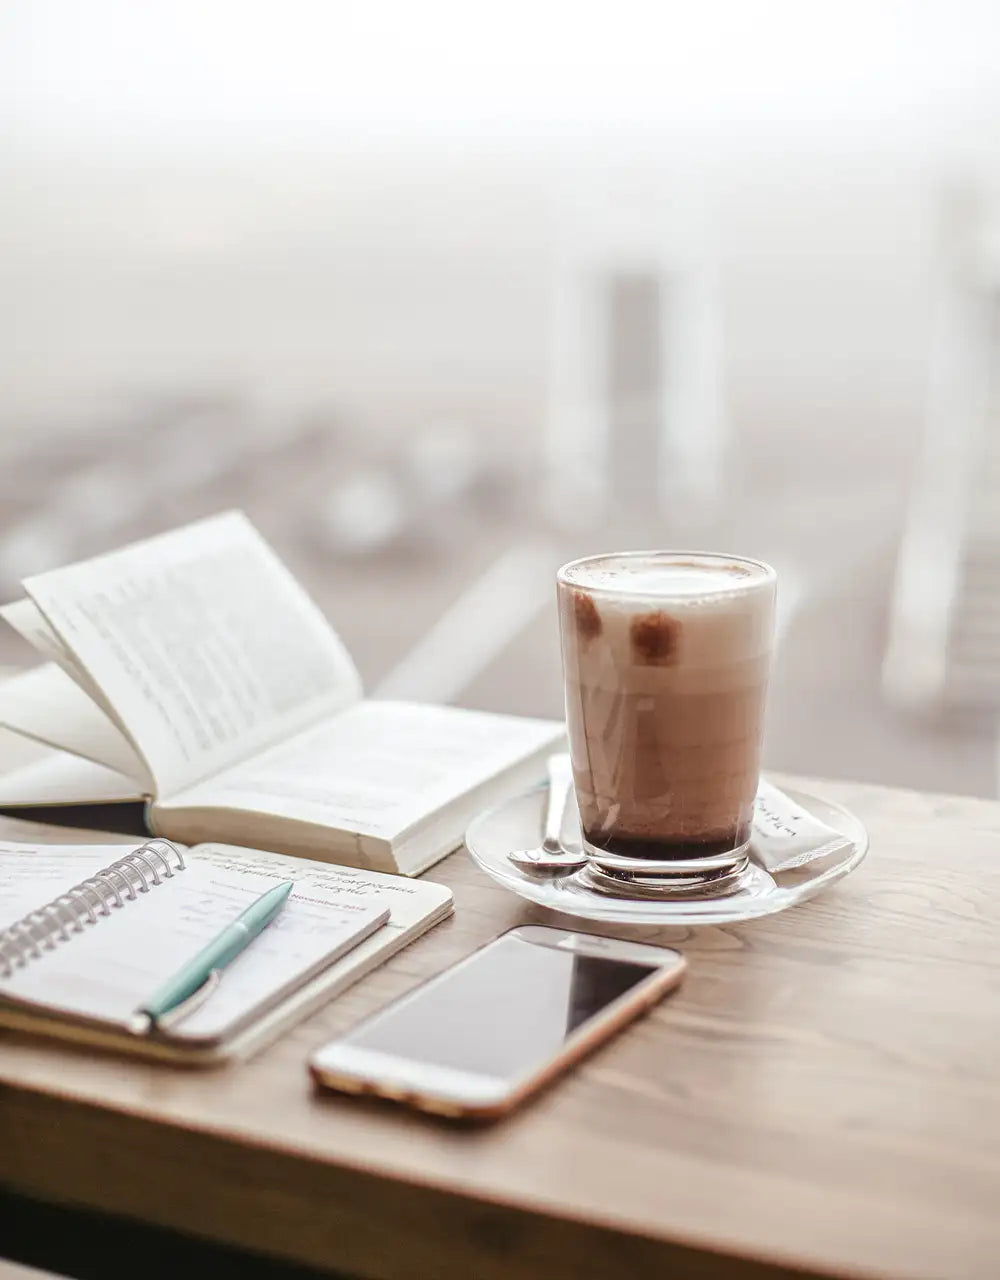 en kaffe, iphone och en bok liggandes på bar